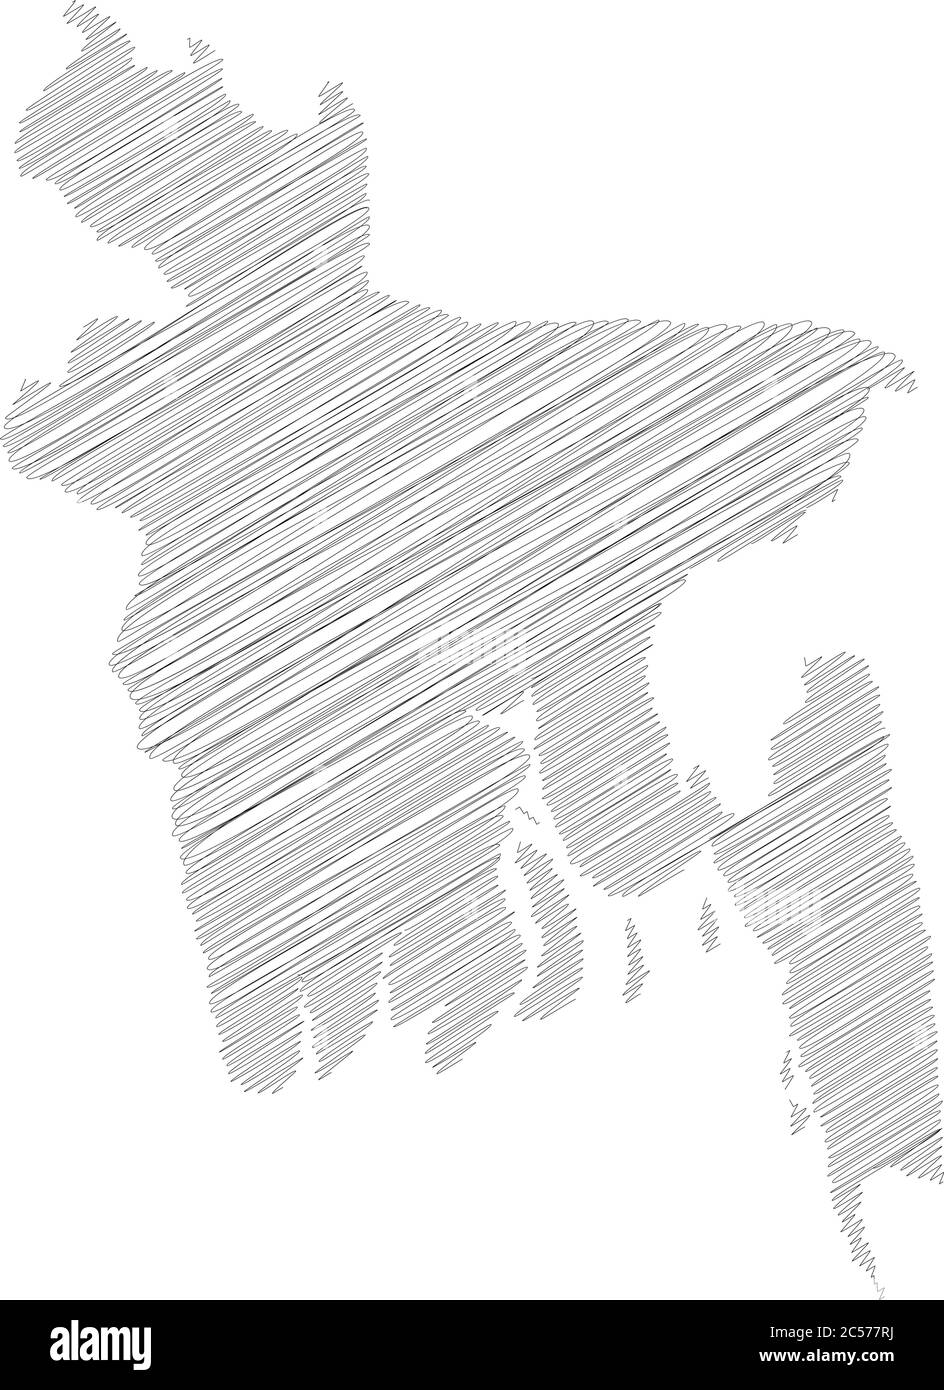 Bangladesh - croquis de scribble au crayon silhouette carte de la région avec ombre portée. Illustration simple à vecteur plat. Illustration de Vecteur